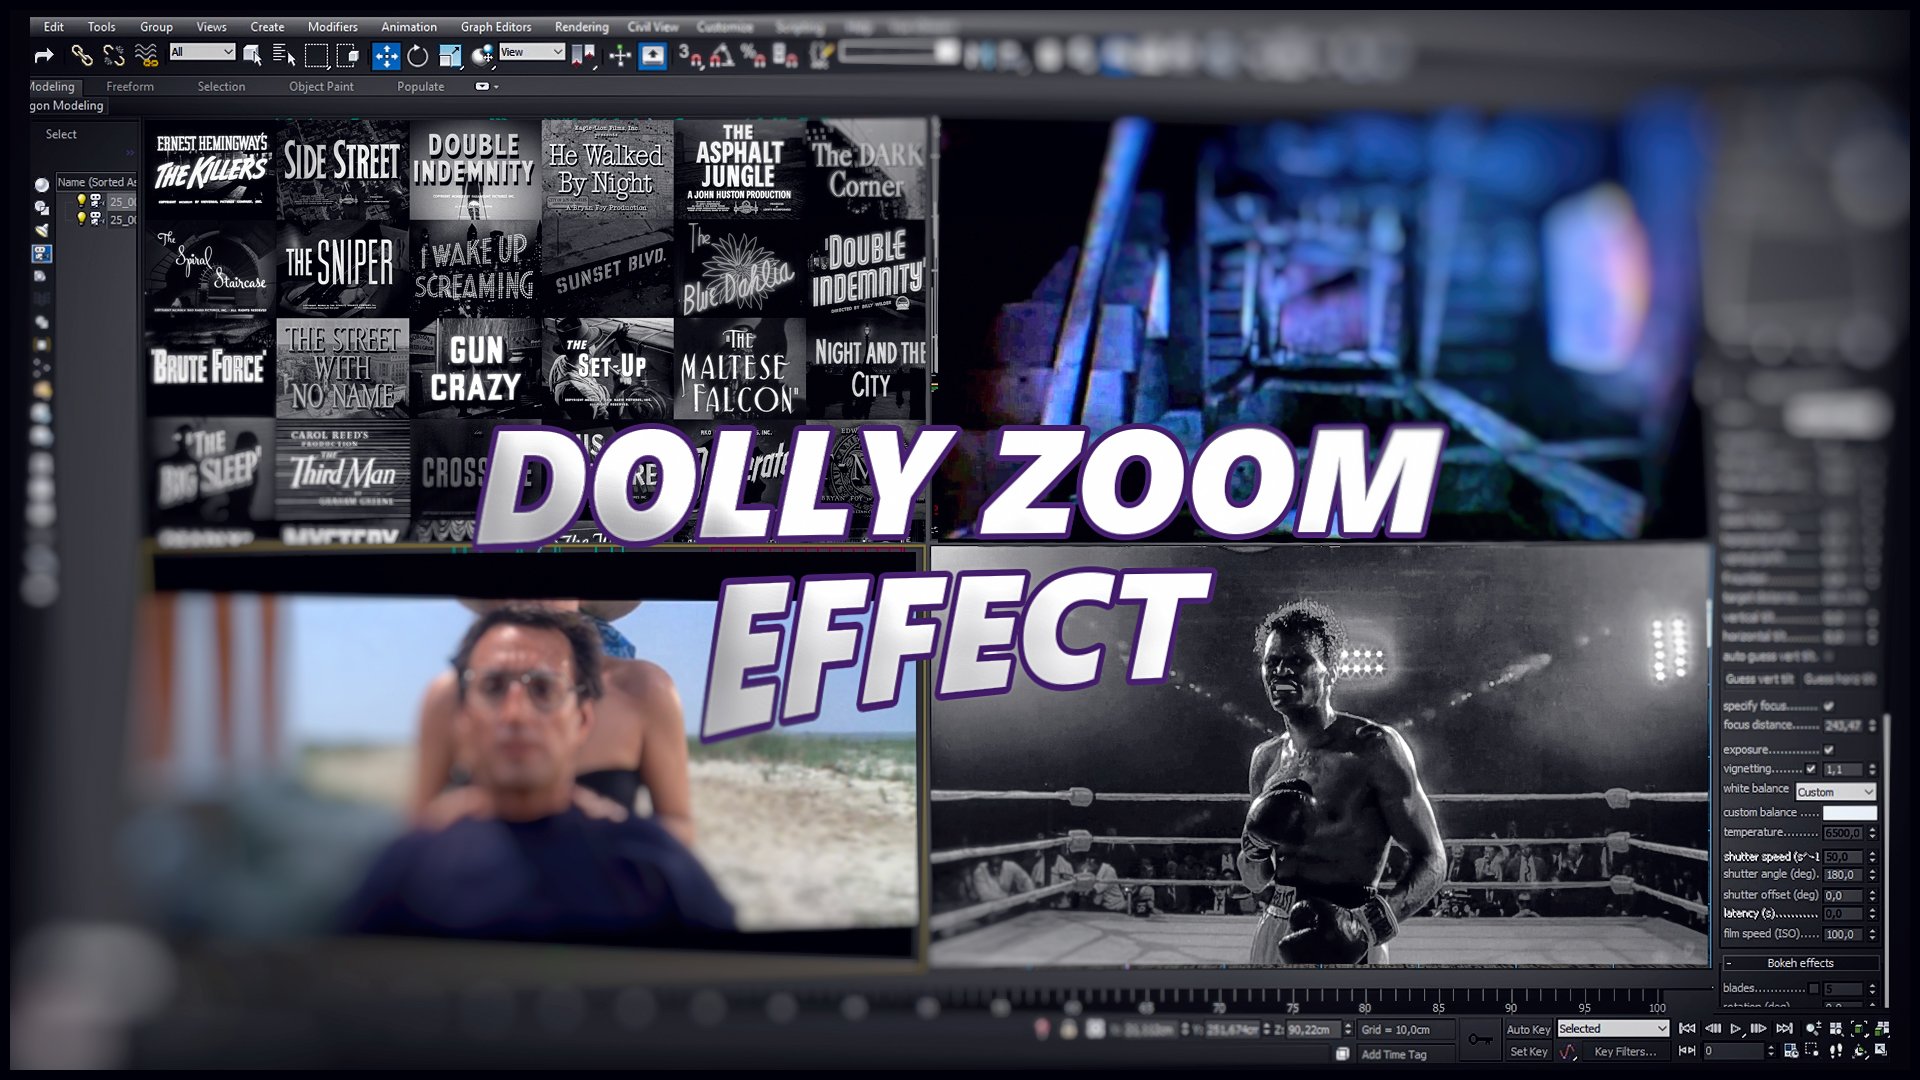 Dolly Zoom Effect (S E R E B R Y A K O V)